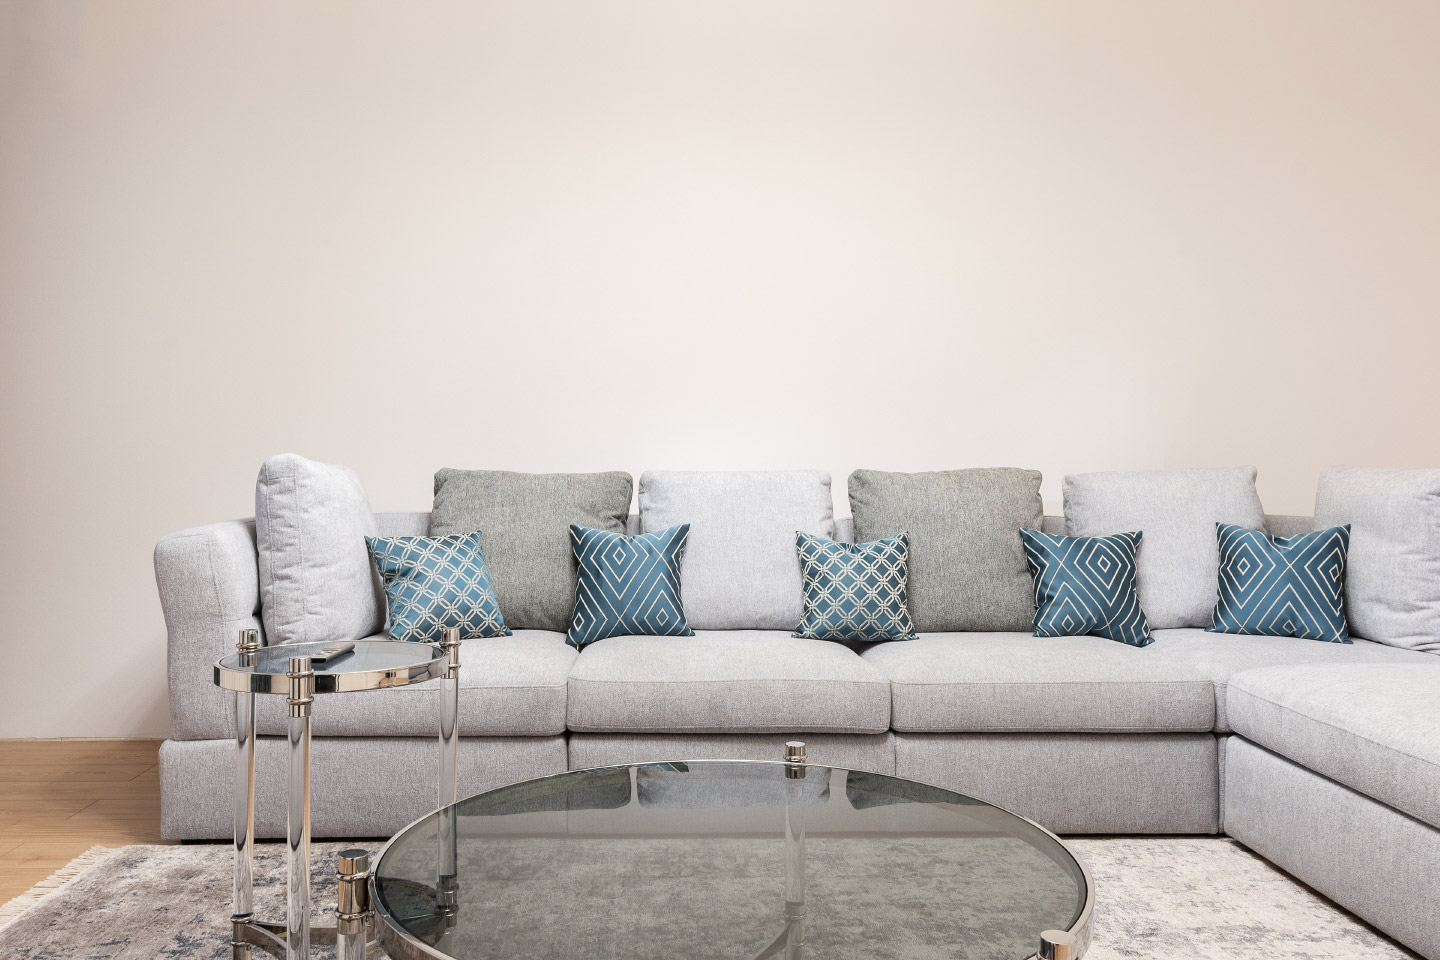 Серый модульный диван и прозрачный столик — идеальное лаконичное сочетание.